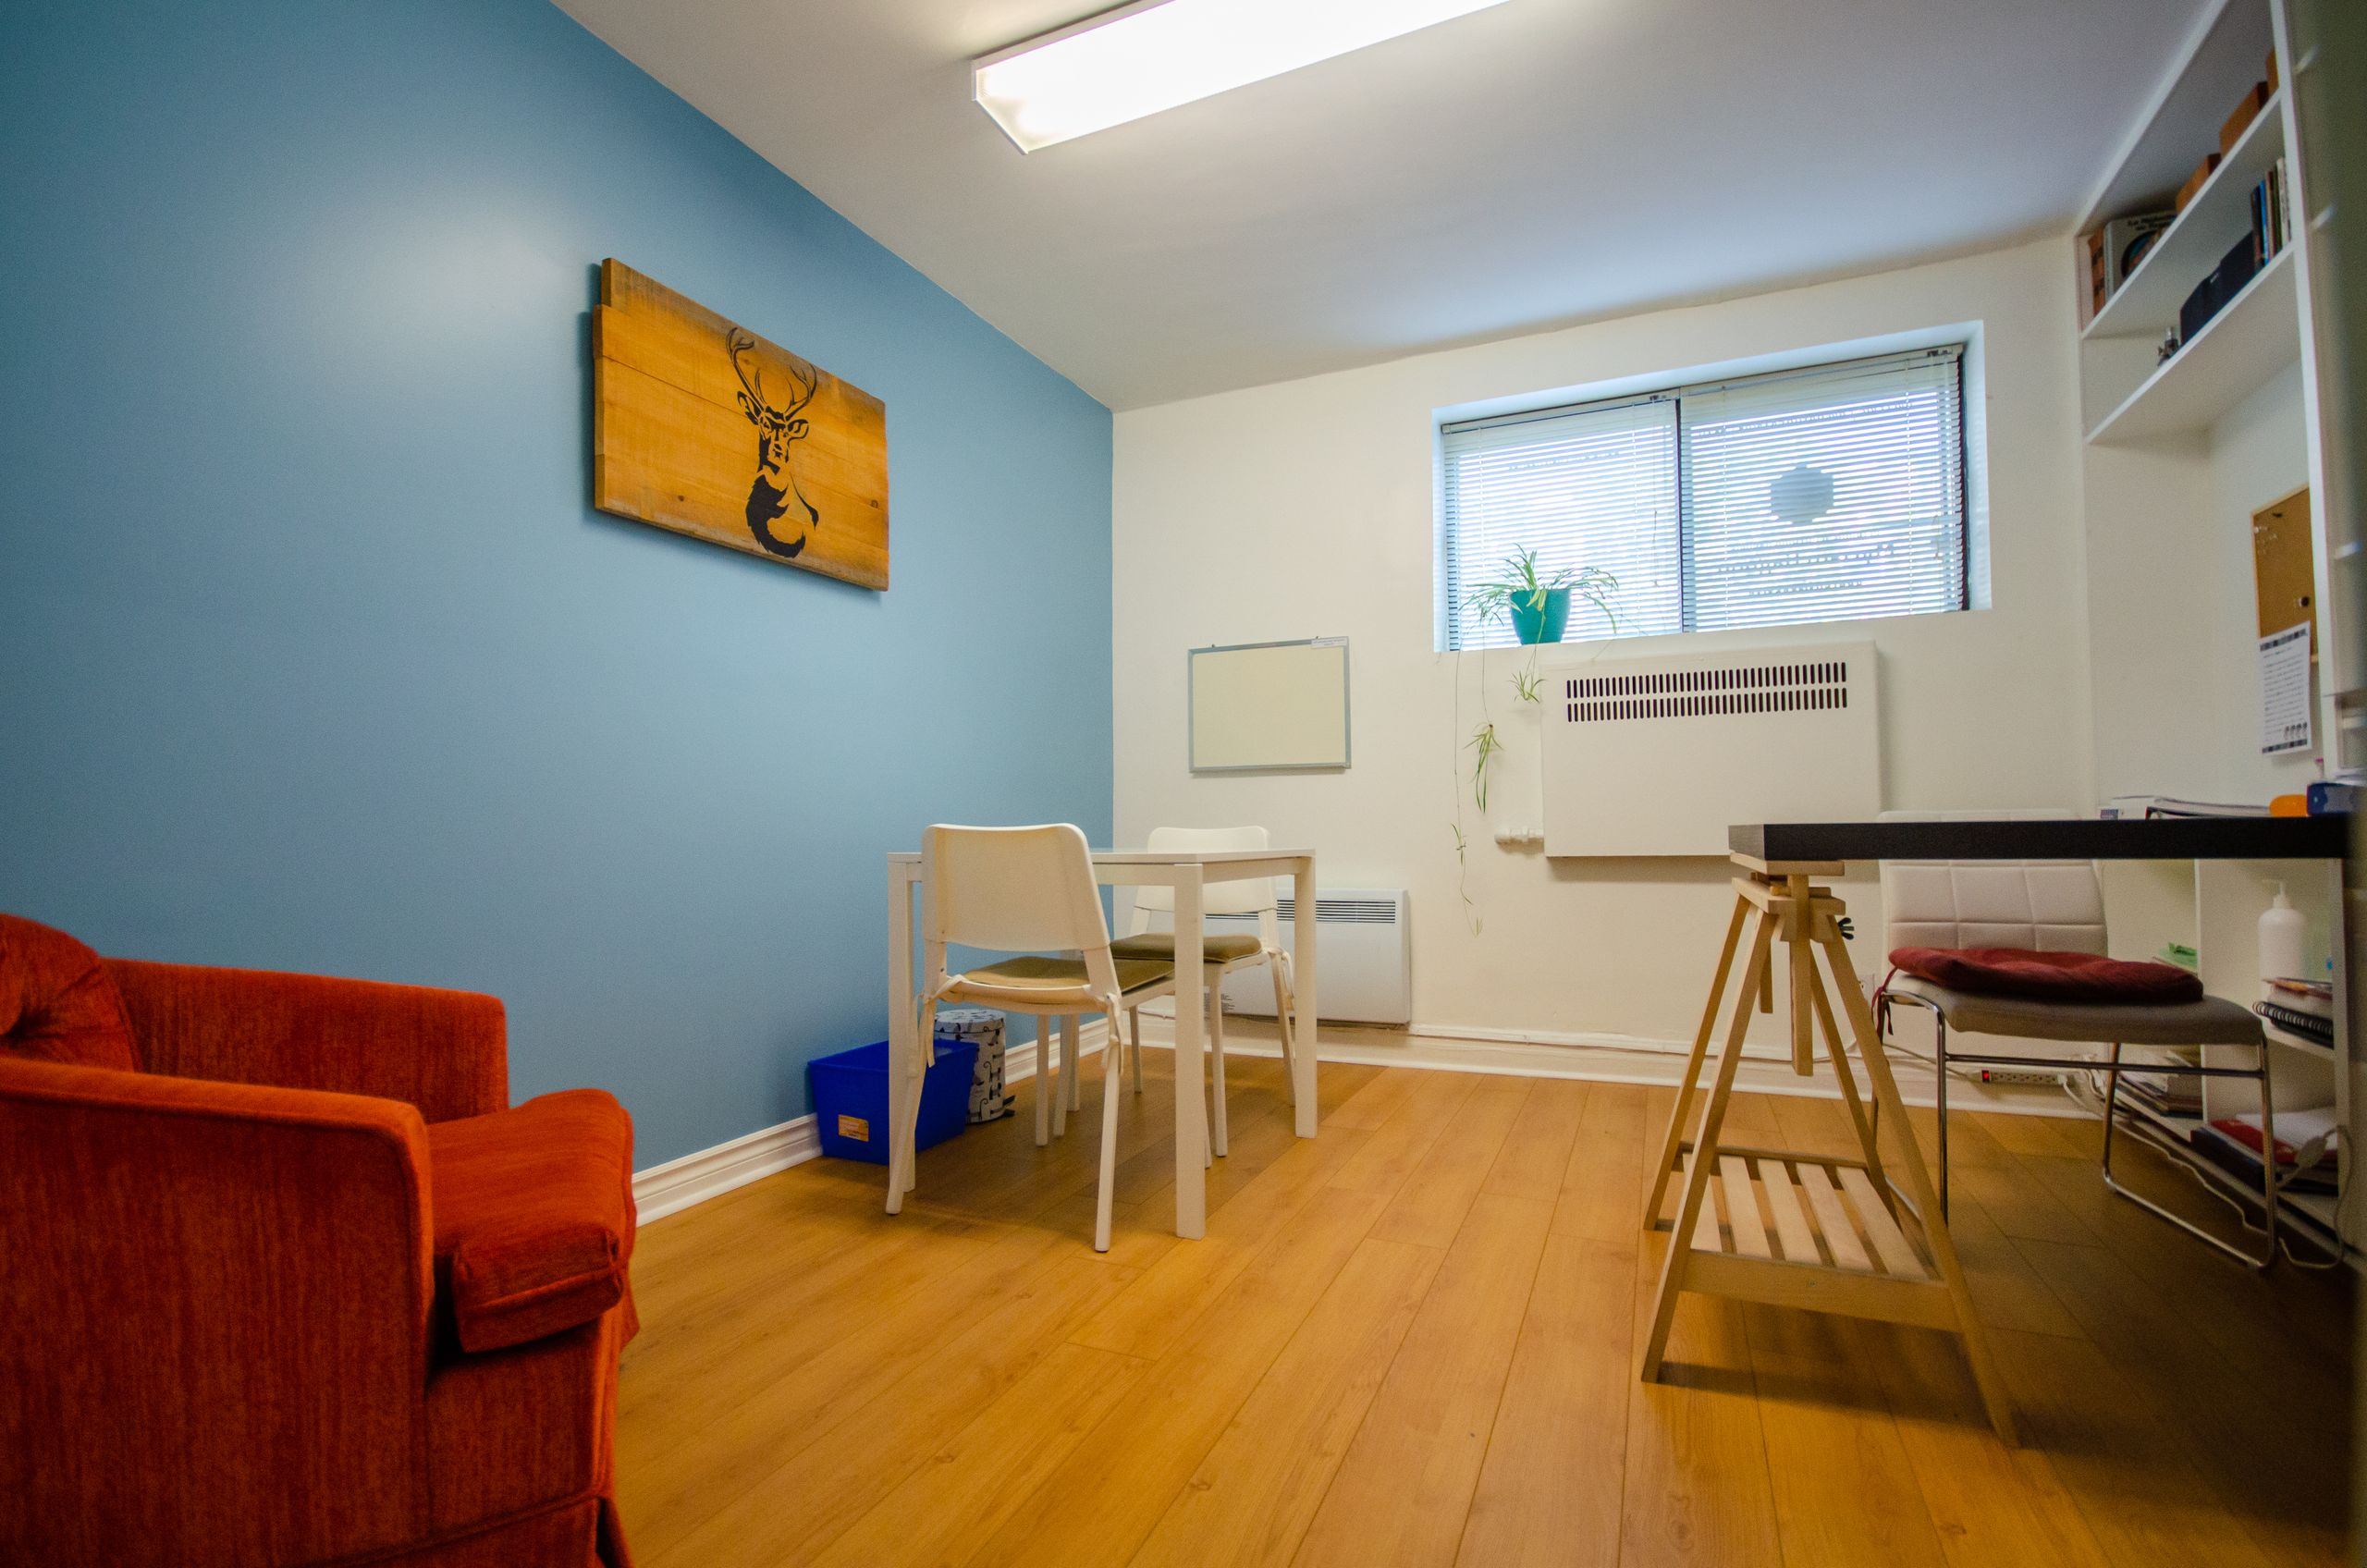 Bureau mur bleu et fauteuil orange de la clinique Myriam Gagnon